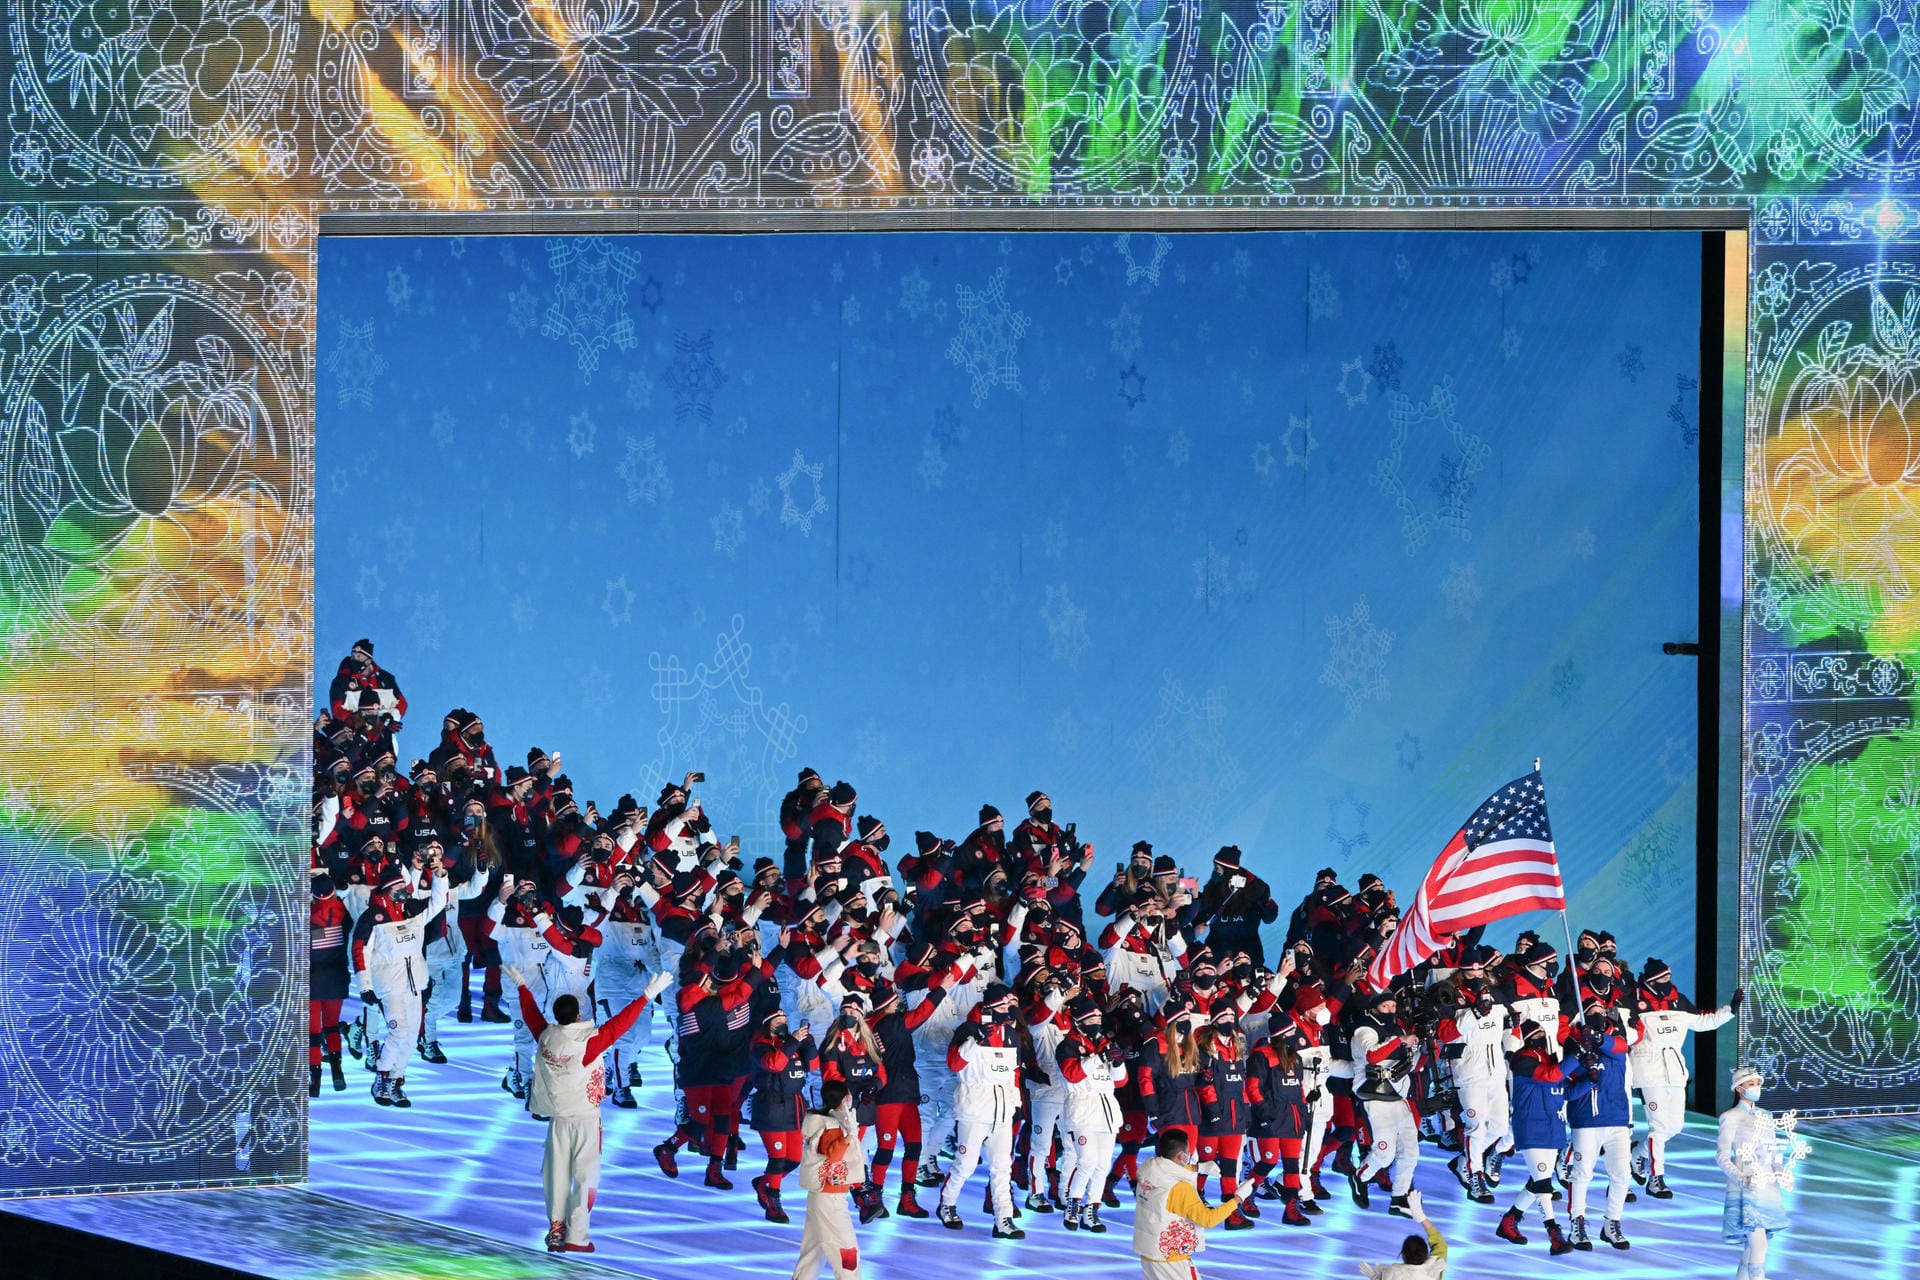 Die Mannschaft der USA mit Fahnenträger Elana Meyers Taylor und John Shuster: Das Land stellt die meisten Athleten, insgesamt 223, bei diesen Winterspielen.